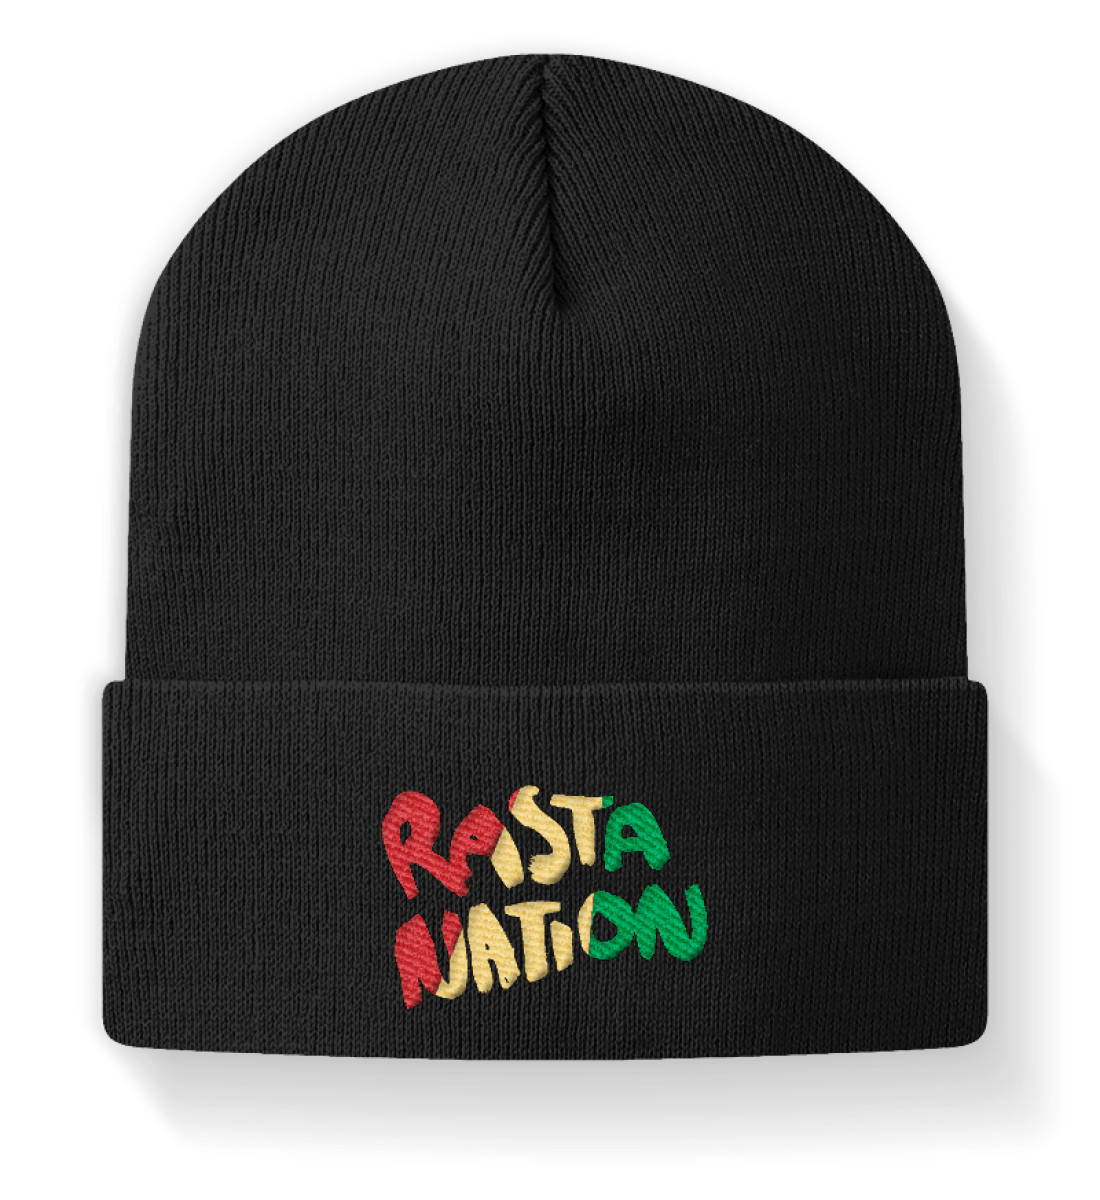 Berretto Rasta Nation Reggae Roots - Berretto-16